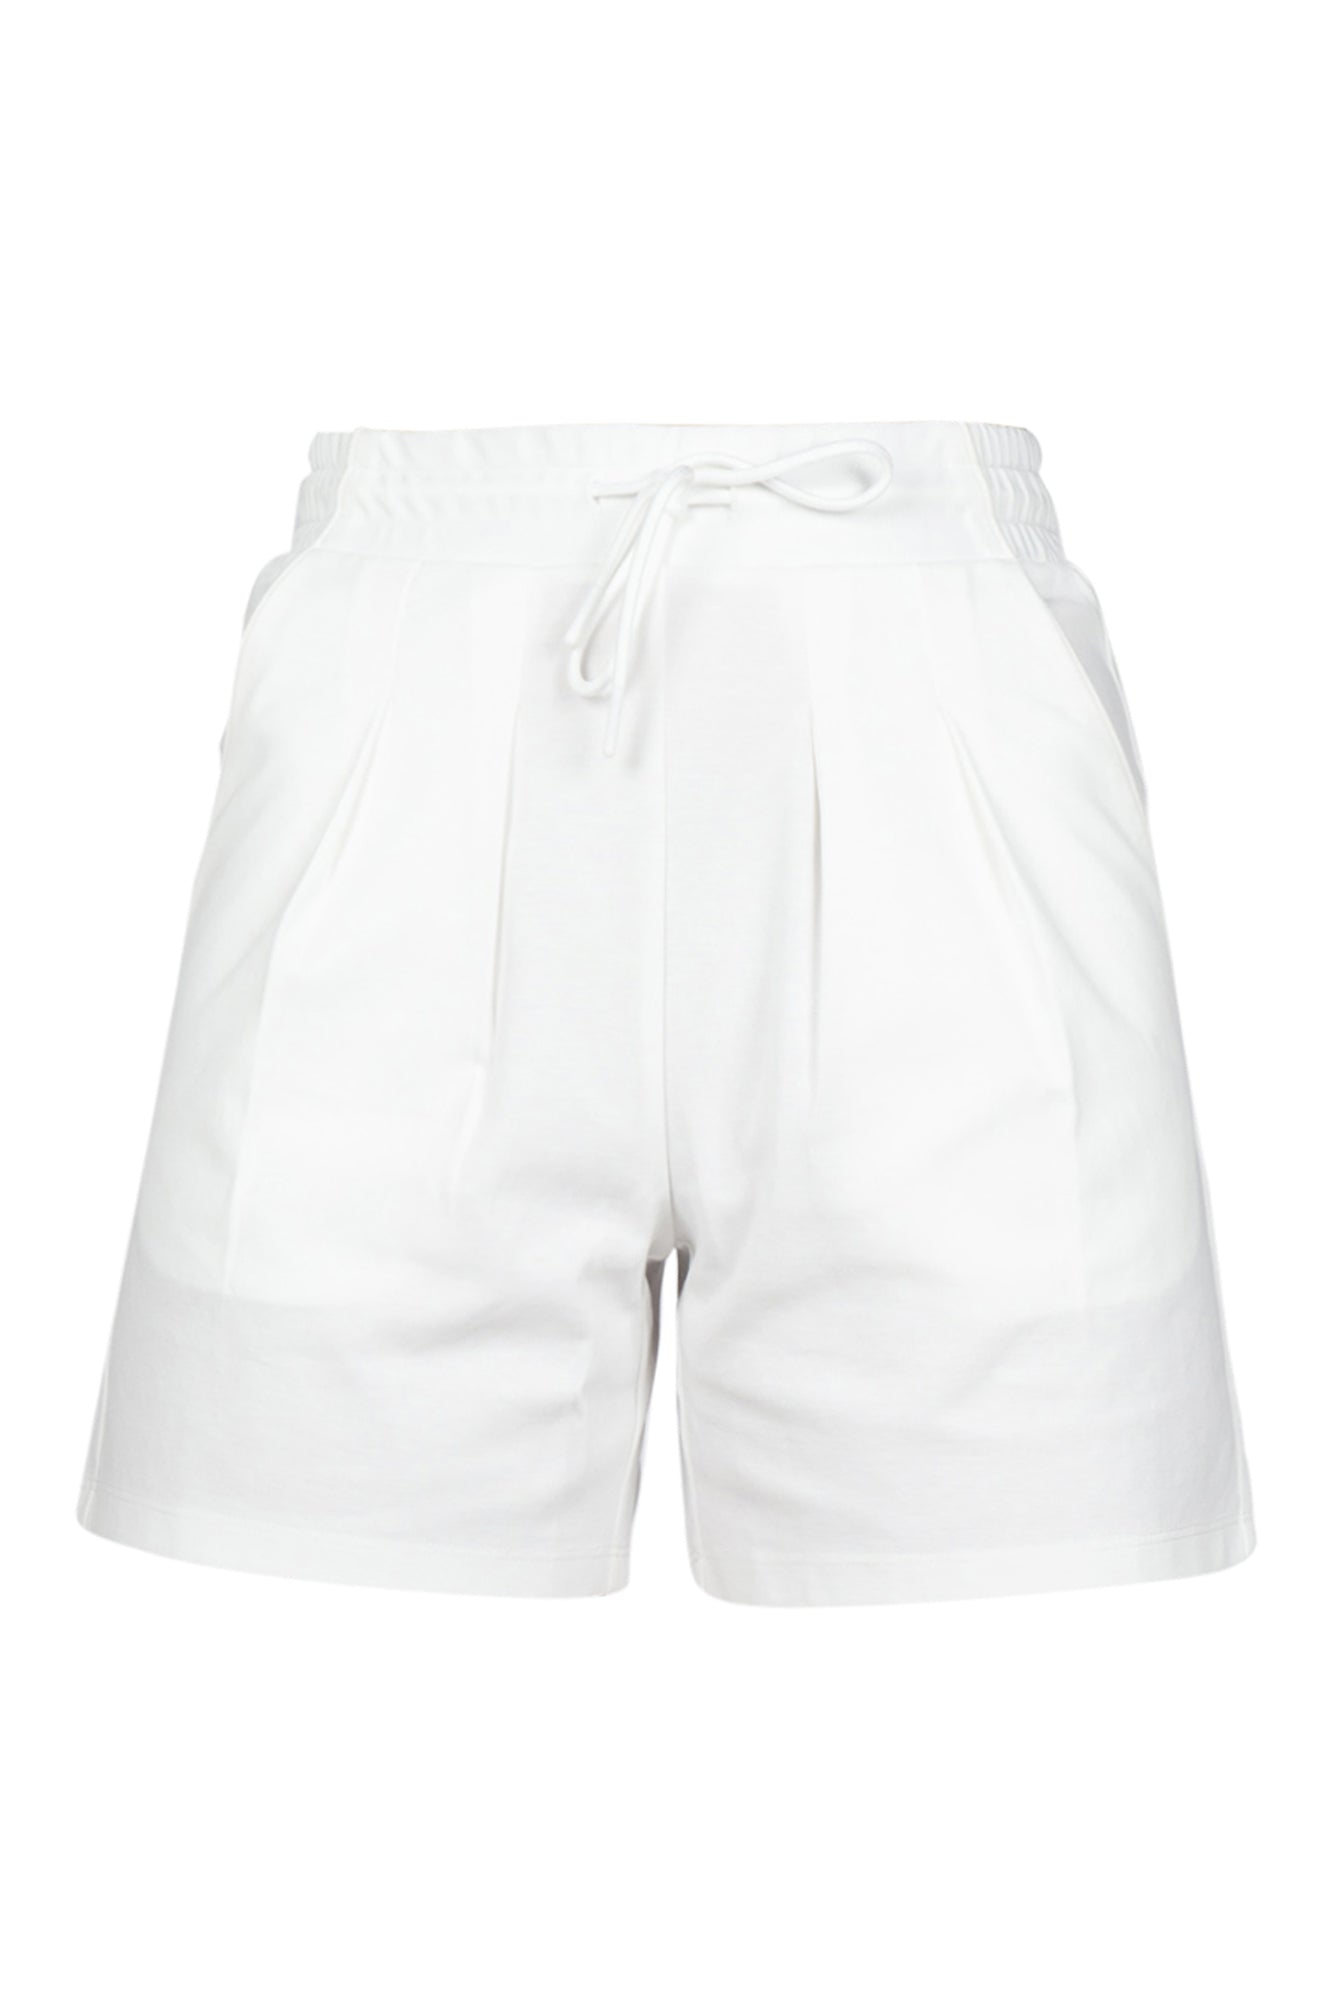 People Of Shibuya - Shorts - 430459 - Bianco